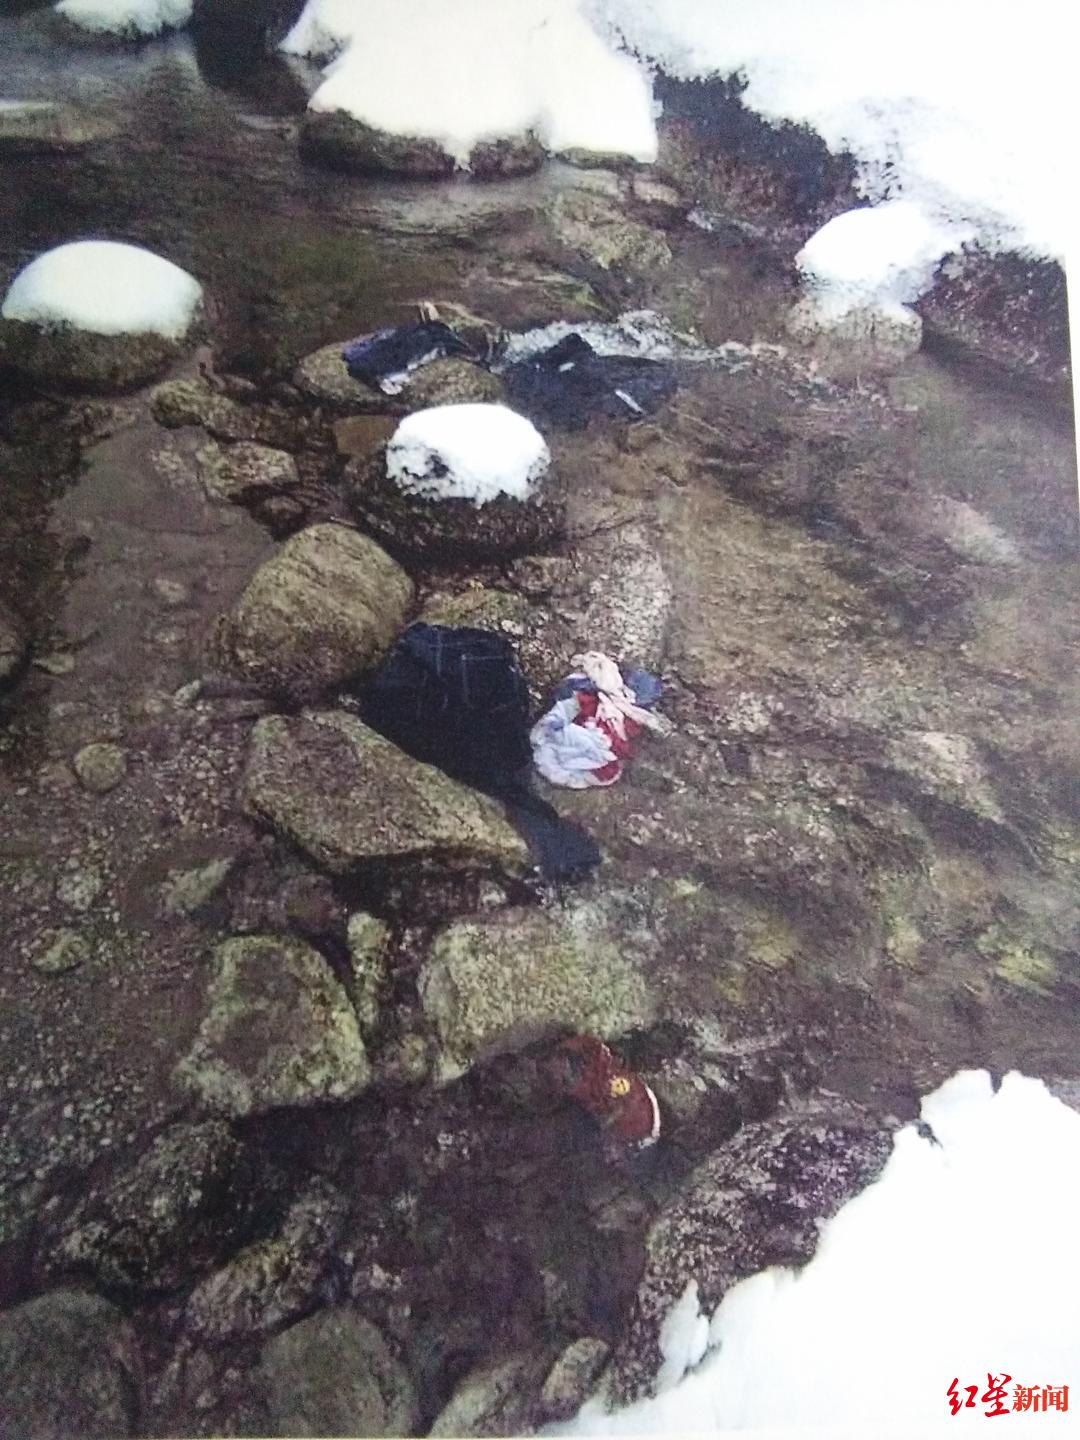 湖南2男童雪天裸死溪中 第一次尸检排除他杀称自主脱衣冻死